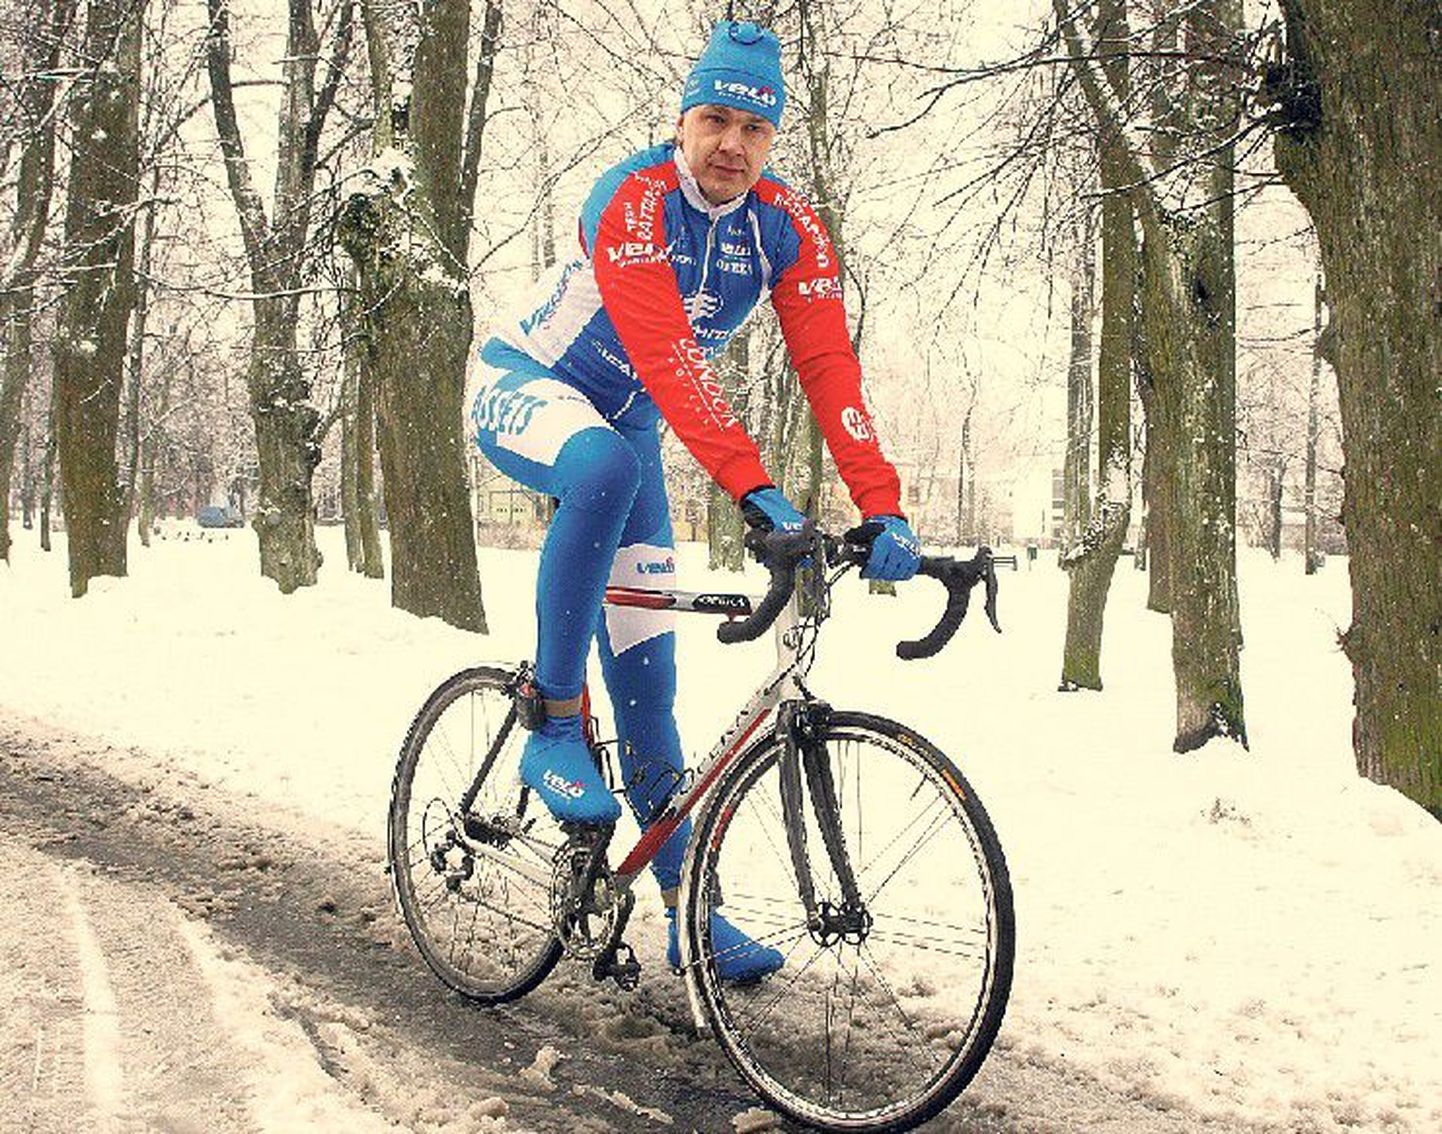 Пауль Лыйв полагает, что катание на велосипеде зимой теперь не является привилегией профессионалов и заниматься им может каждый любитель велосипедной езды.